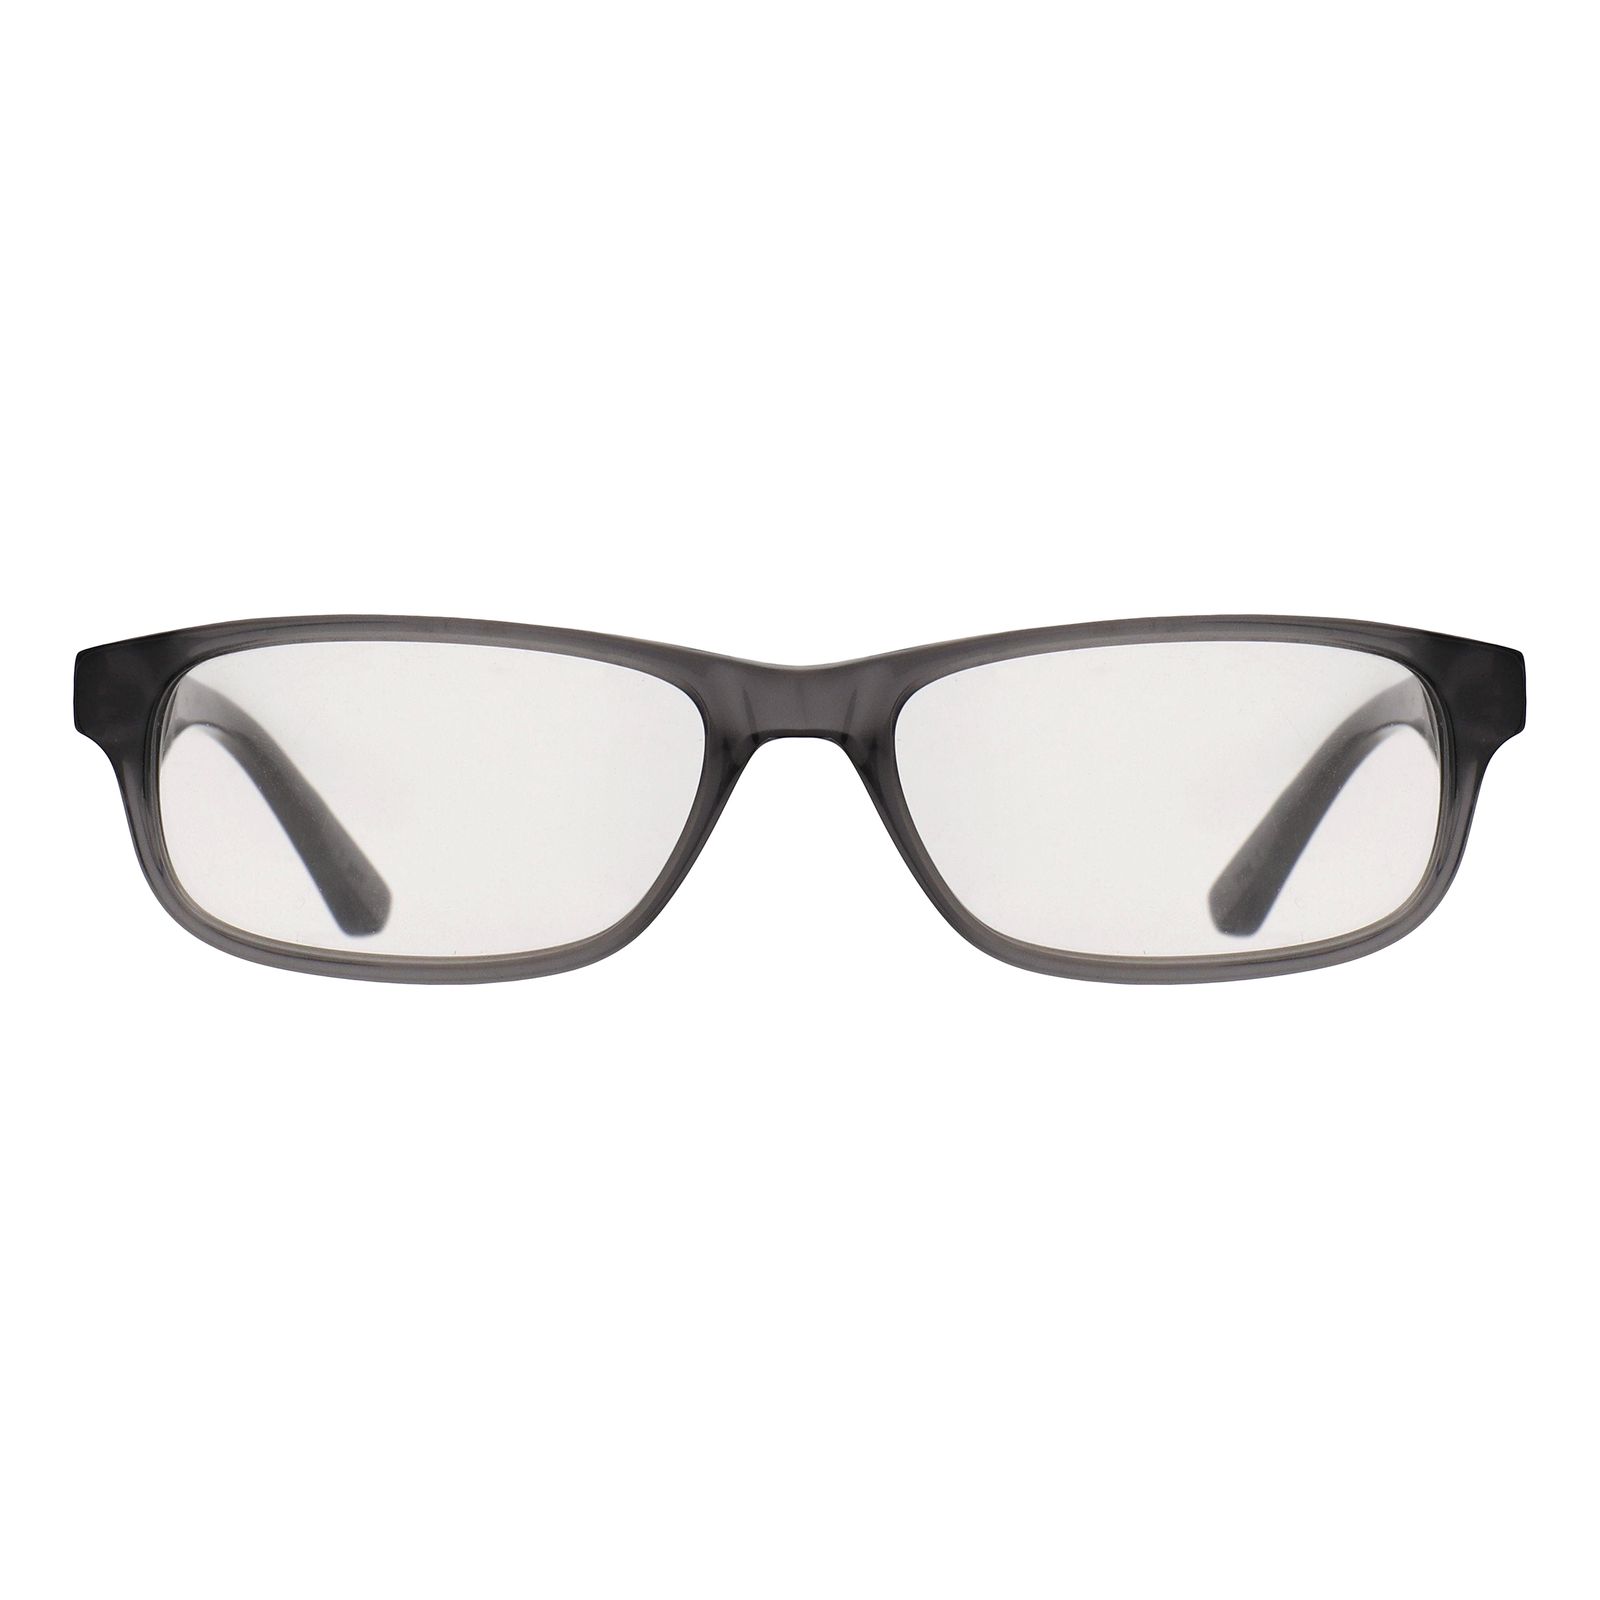 فریم عینک طبی لاگوست مدل 3605-35 -  - 1